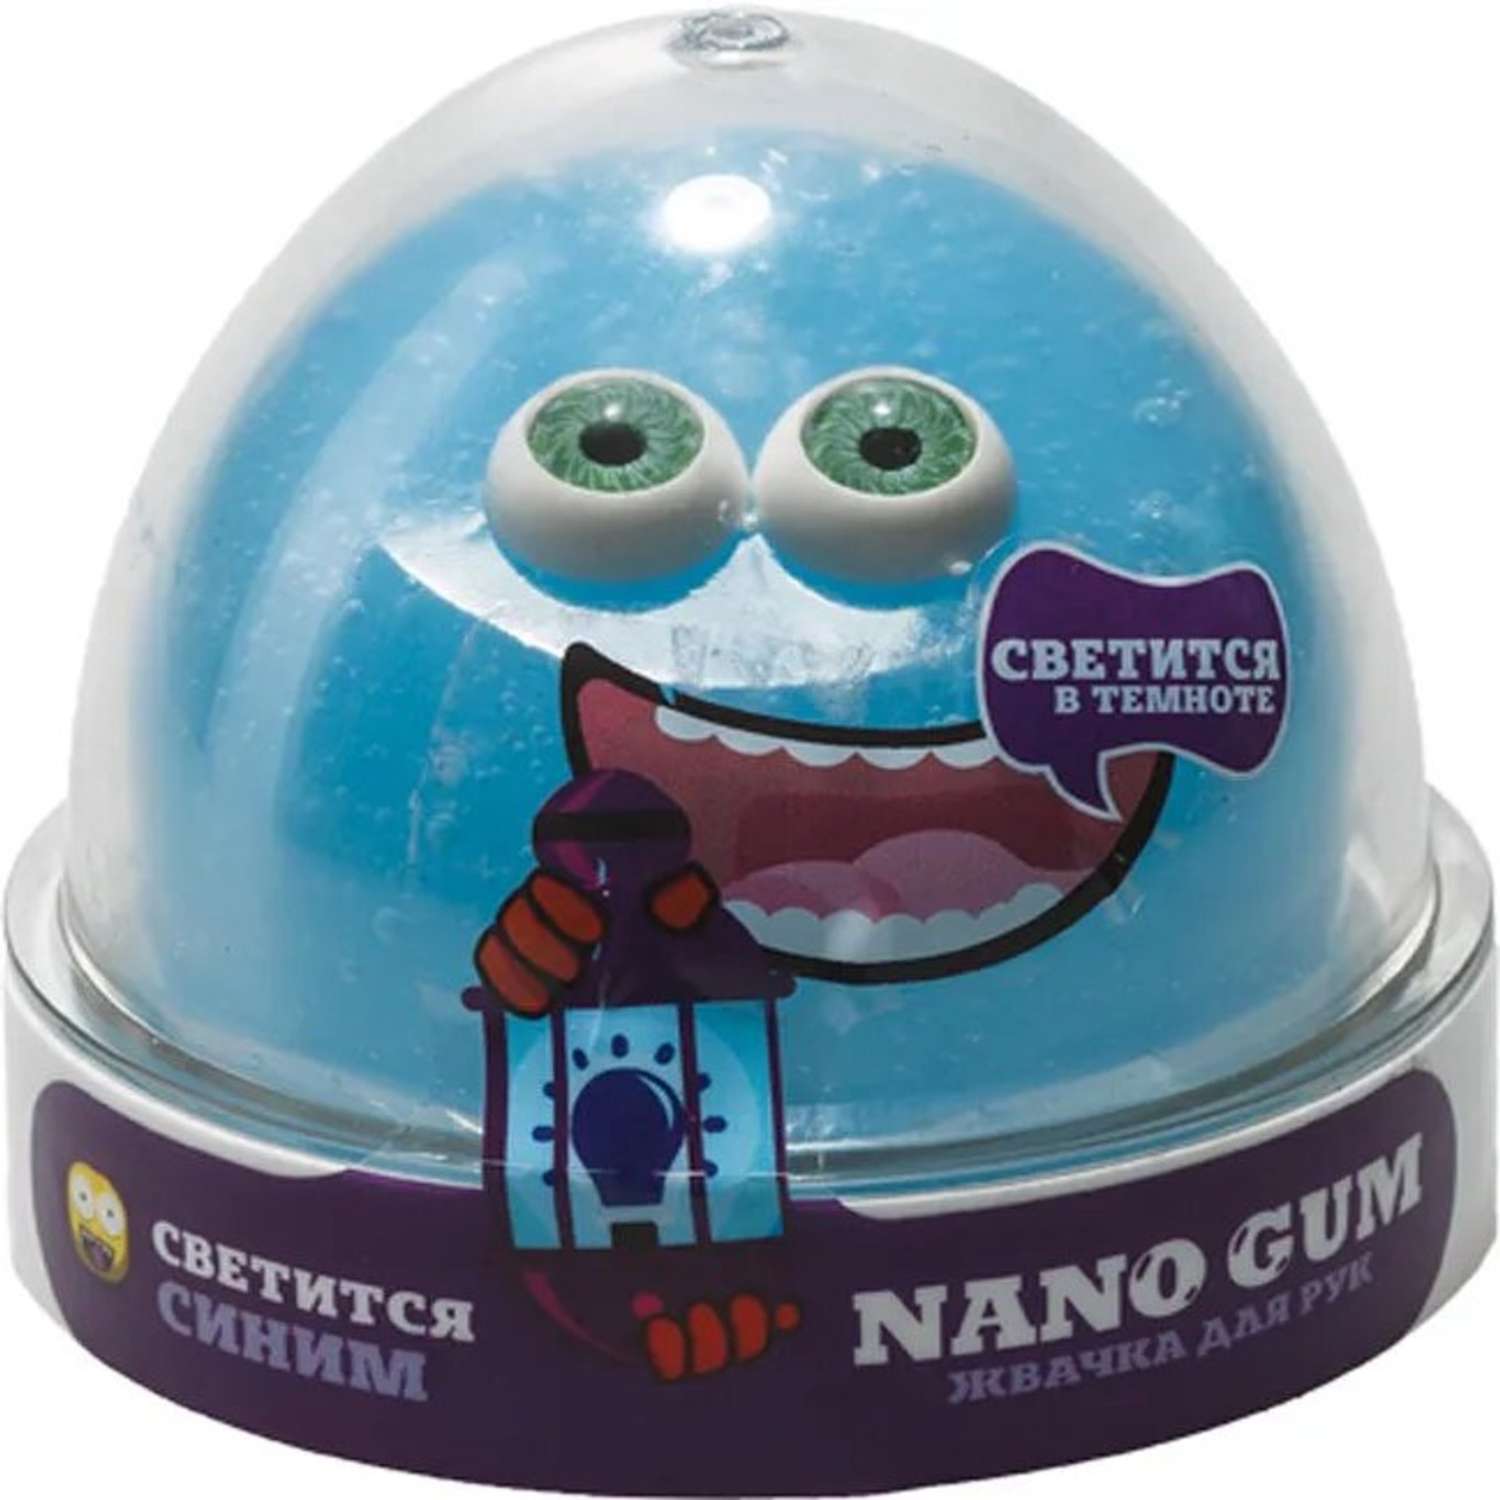 Жвачка для рук Nano Gum Светится в темноте синим - фото 1